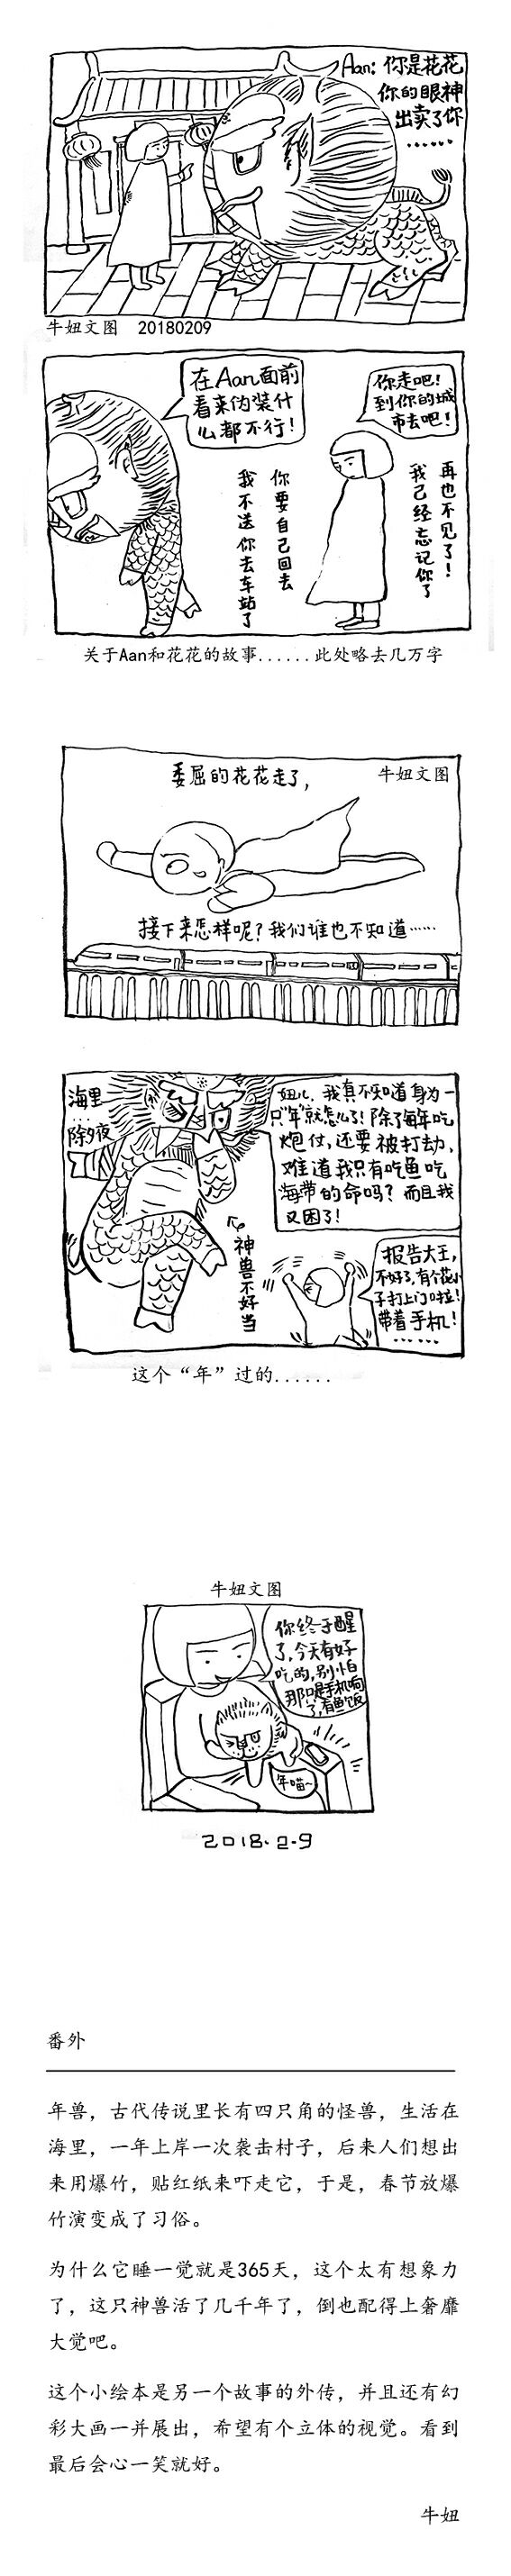 如果年兽来到现代会发生啥？郑州设计师用漫画讲述现代年兽故事